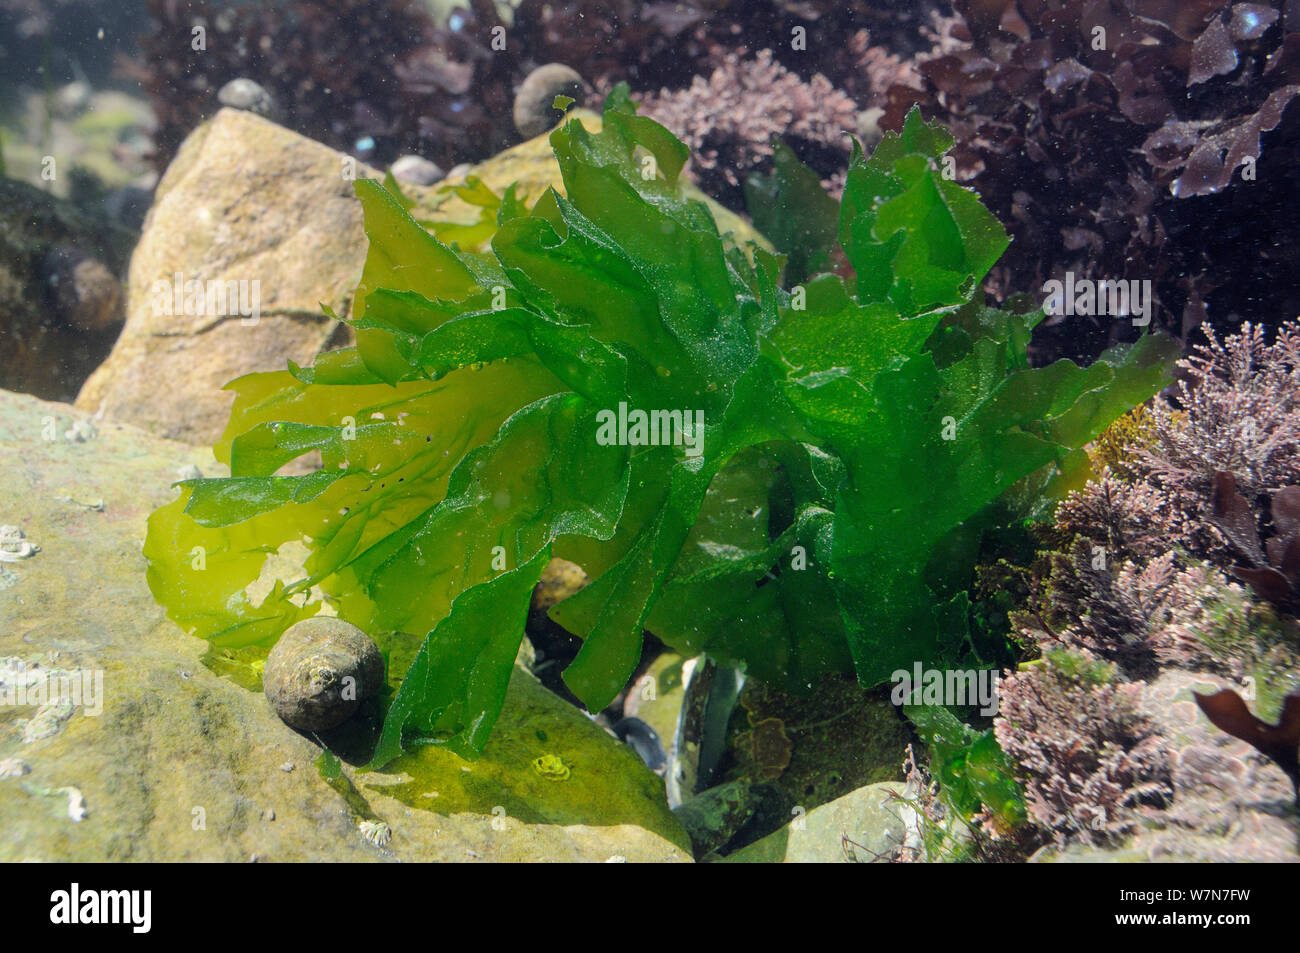 Lavamanos / verde lechuga de mar (Ulva lactuca) creciendo en un rockpool junto a Coralweed (Corallina officinalis). Rhossili, la Península de Gower, REINO UNIDO, Julio. Foto de stock